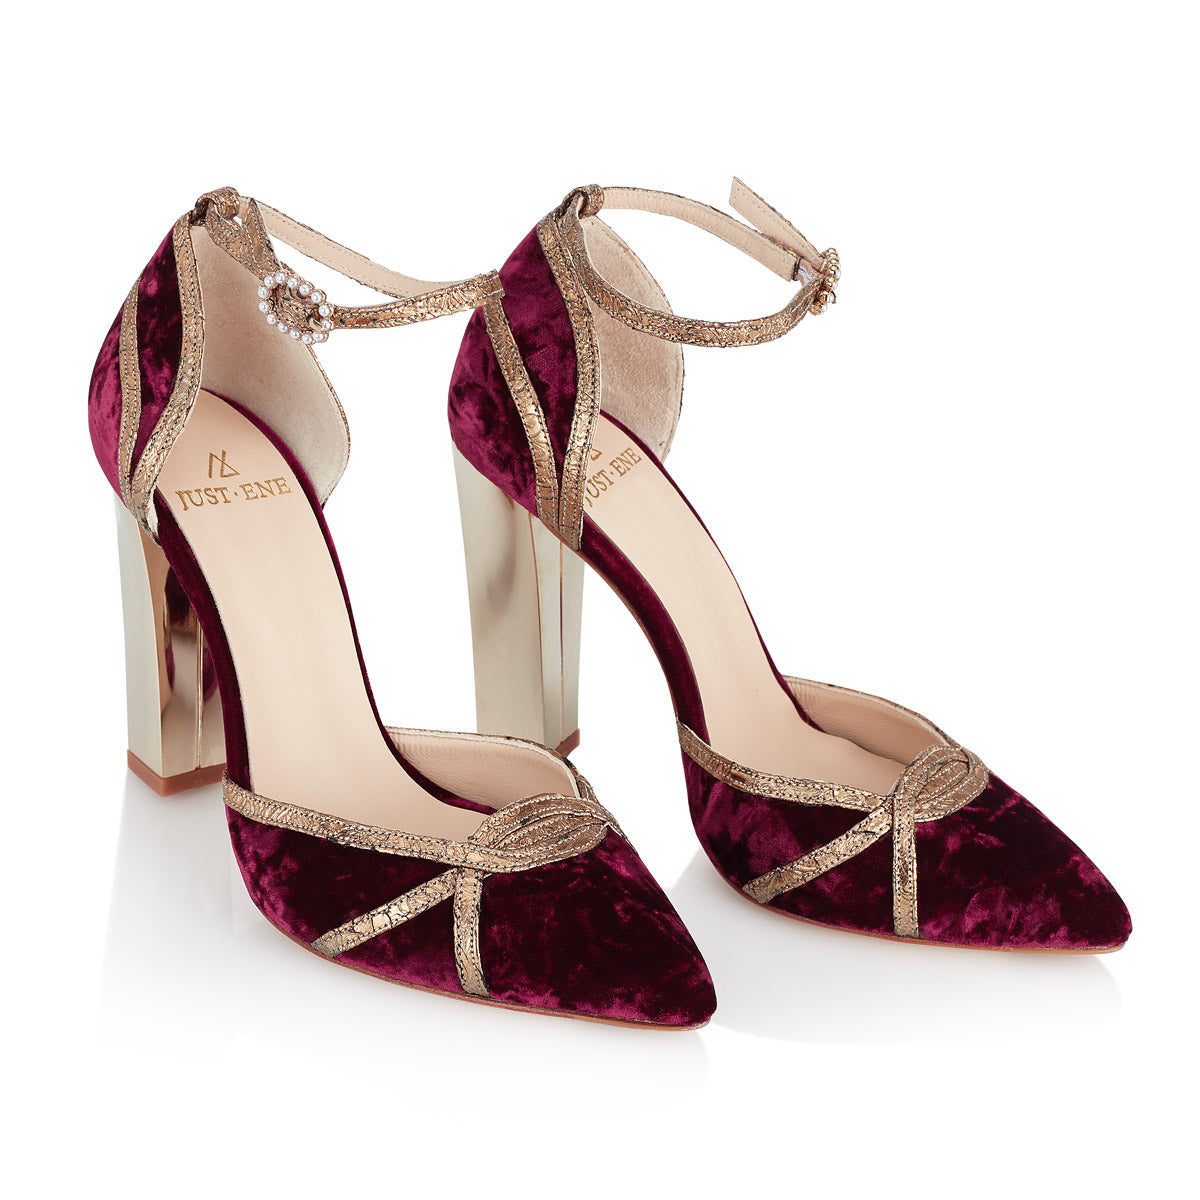 Zapatos Moulin Rouge de terciopelo vinotinto - Just - Just-ENE